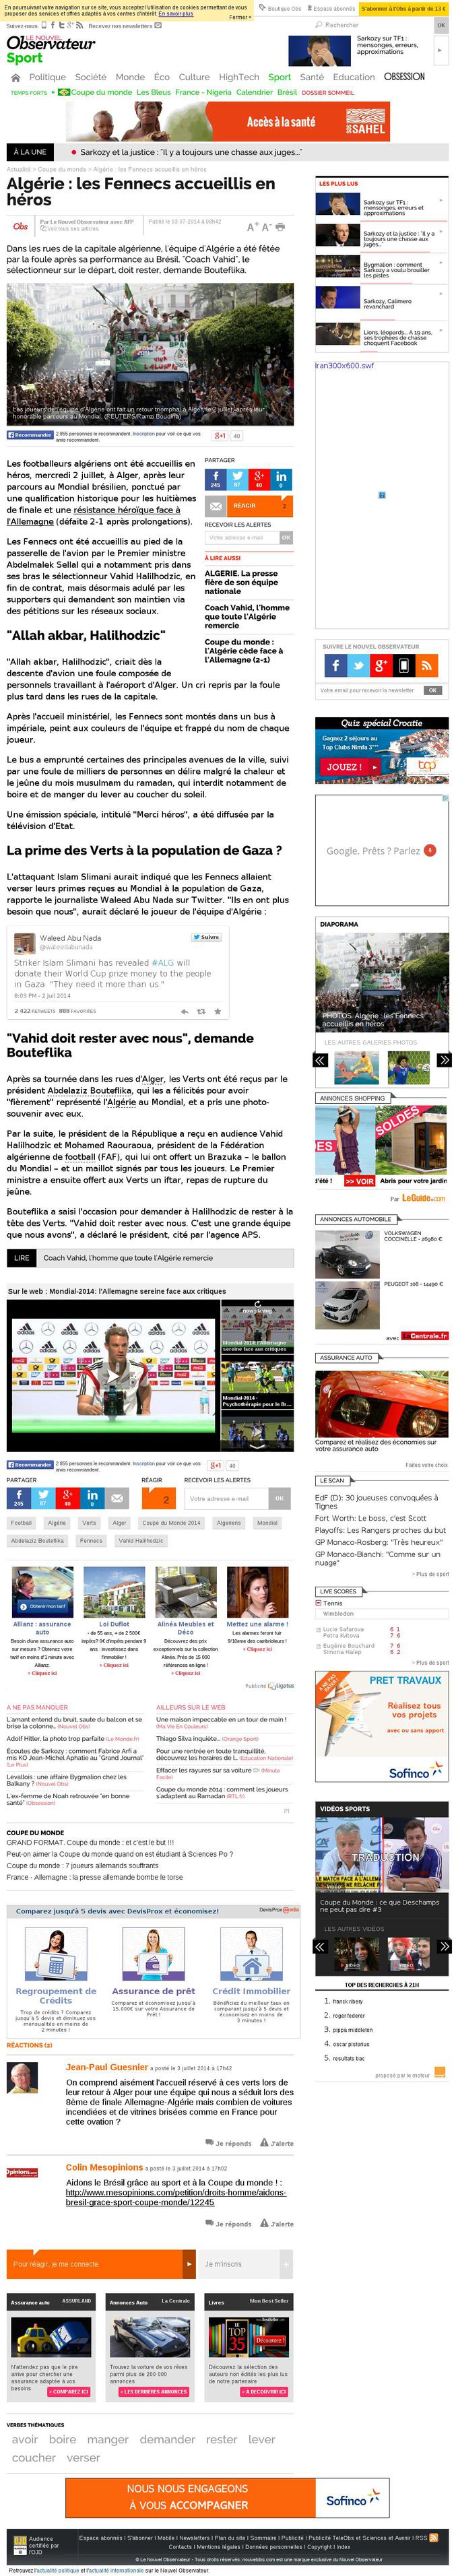 02 juillet 2014: Islam Slimani, l'avant centre vedette de l?équipe d?Algérie, a déclaré au site d?information sportive portugais Maisfutebol que les Fennecs reverseront d'un commun accord l'intégralité de leurs primes de match à la population de Gaza.